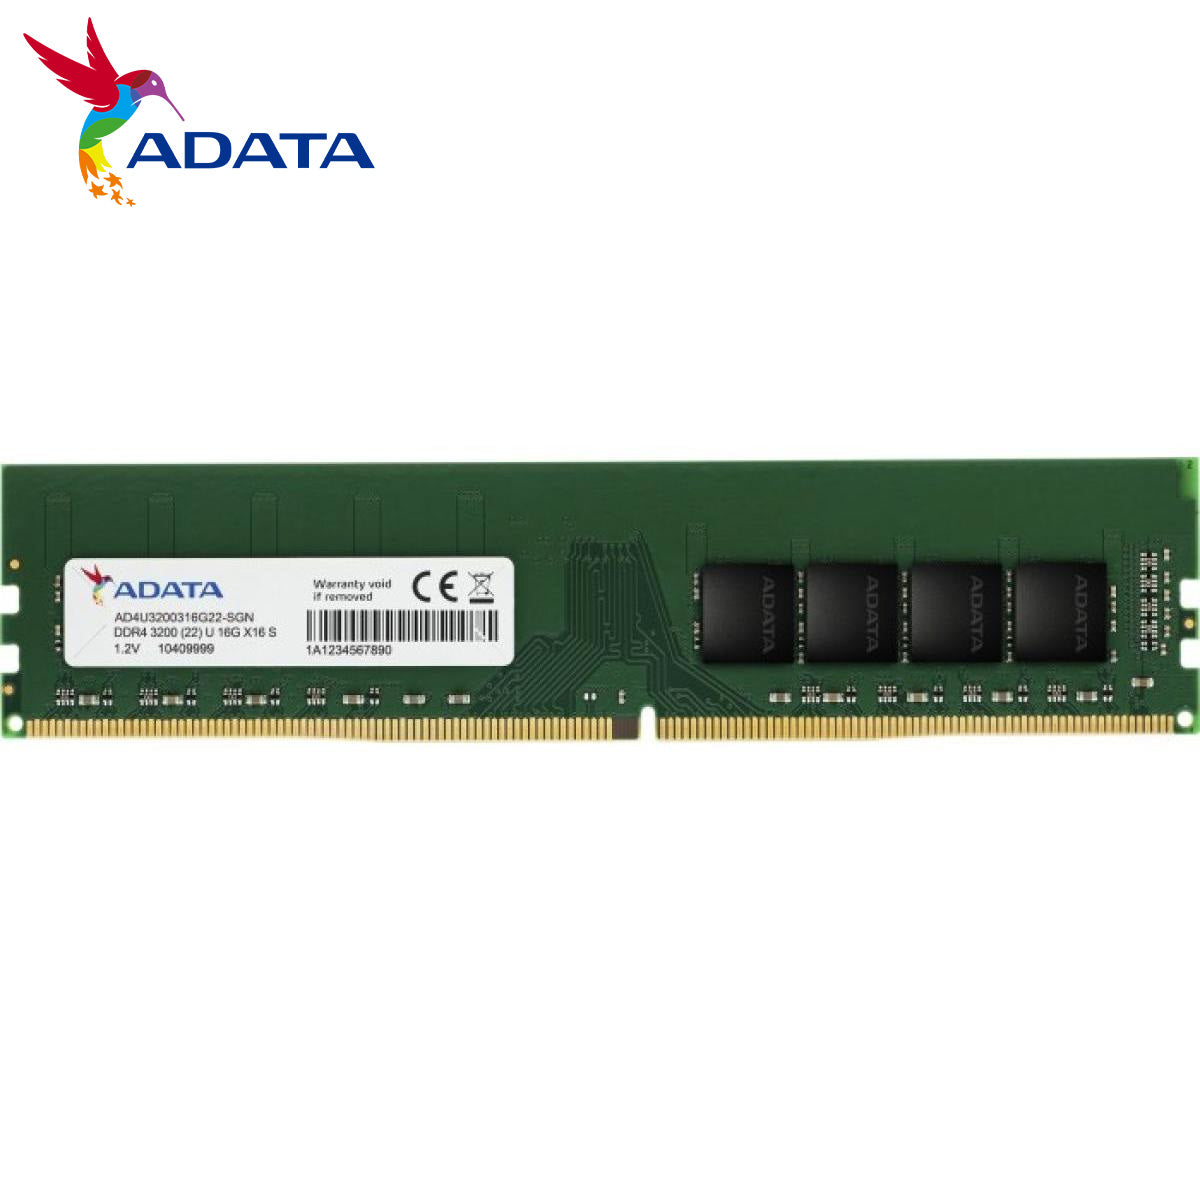 ADATA DDR4 8G 3200HZ ECC-DIMM, ( AD4E320038G22-BSSC )